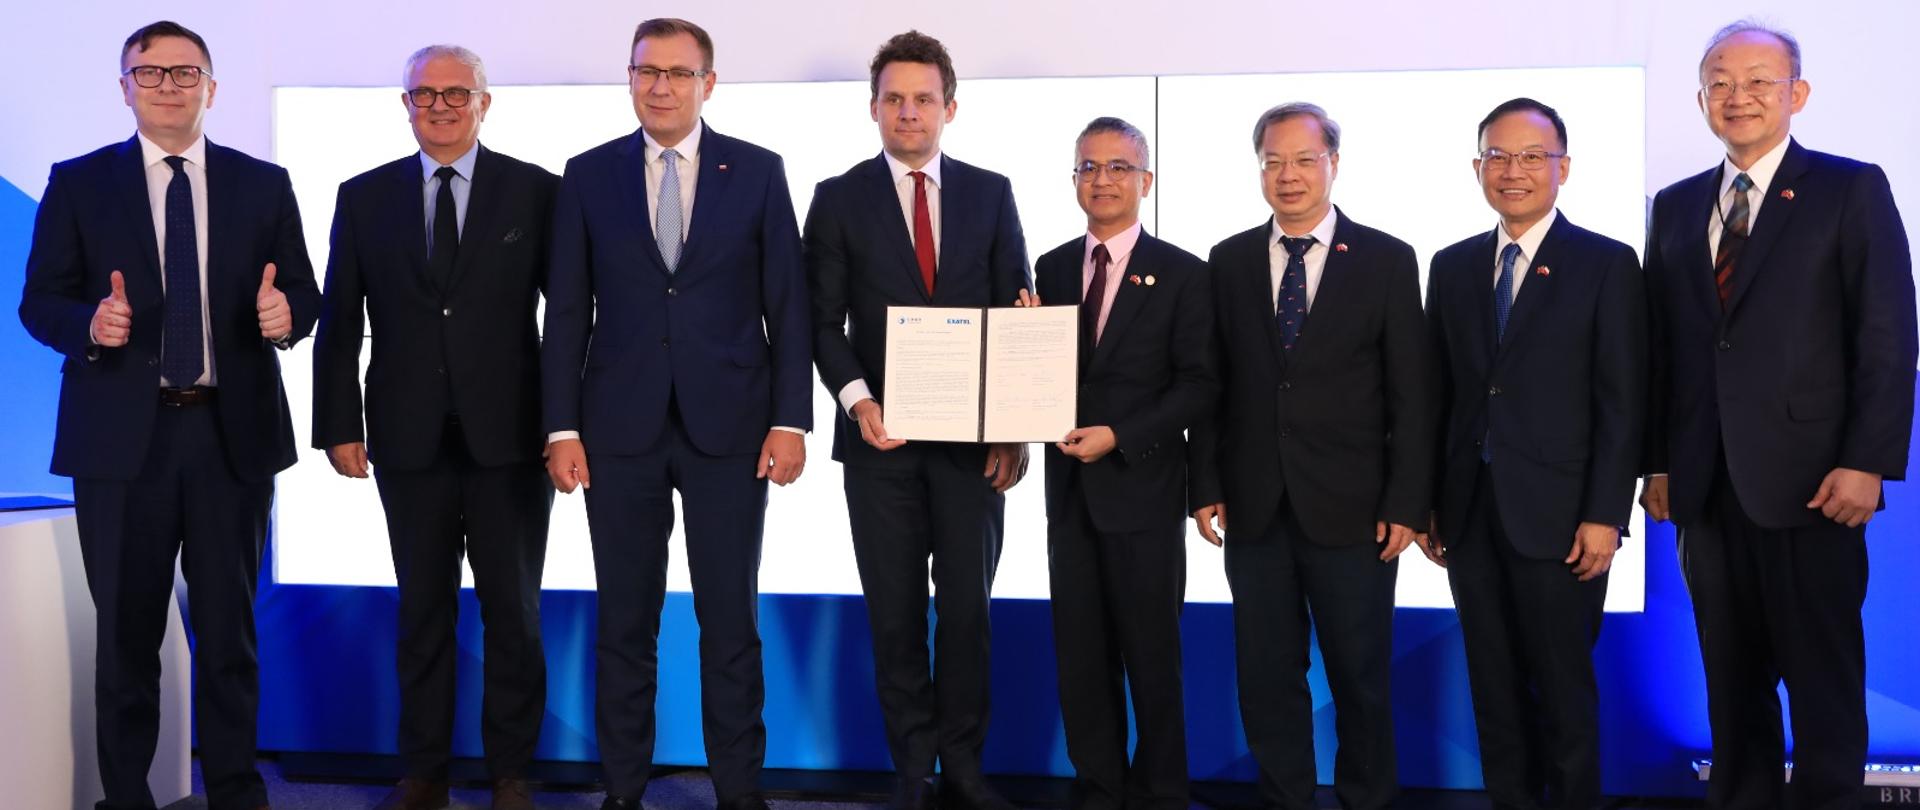 Grzegorz Piechowiak wiceminister rozwoju i technologii podczas ceremonii podpisania porozumienia o współpracy między Exatel S.A., a tajwańskim przedsiębiorstwem telekomunikacyjnym Chunghwa Telecom Company. 